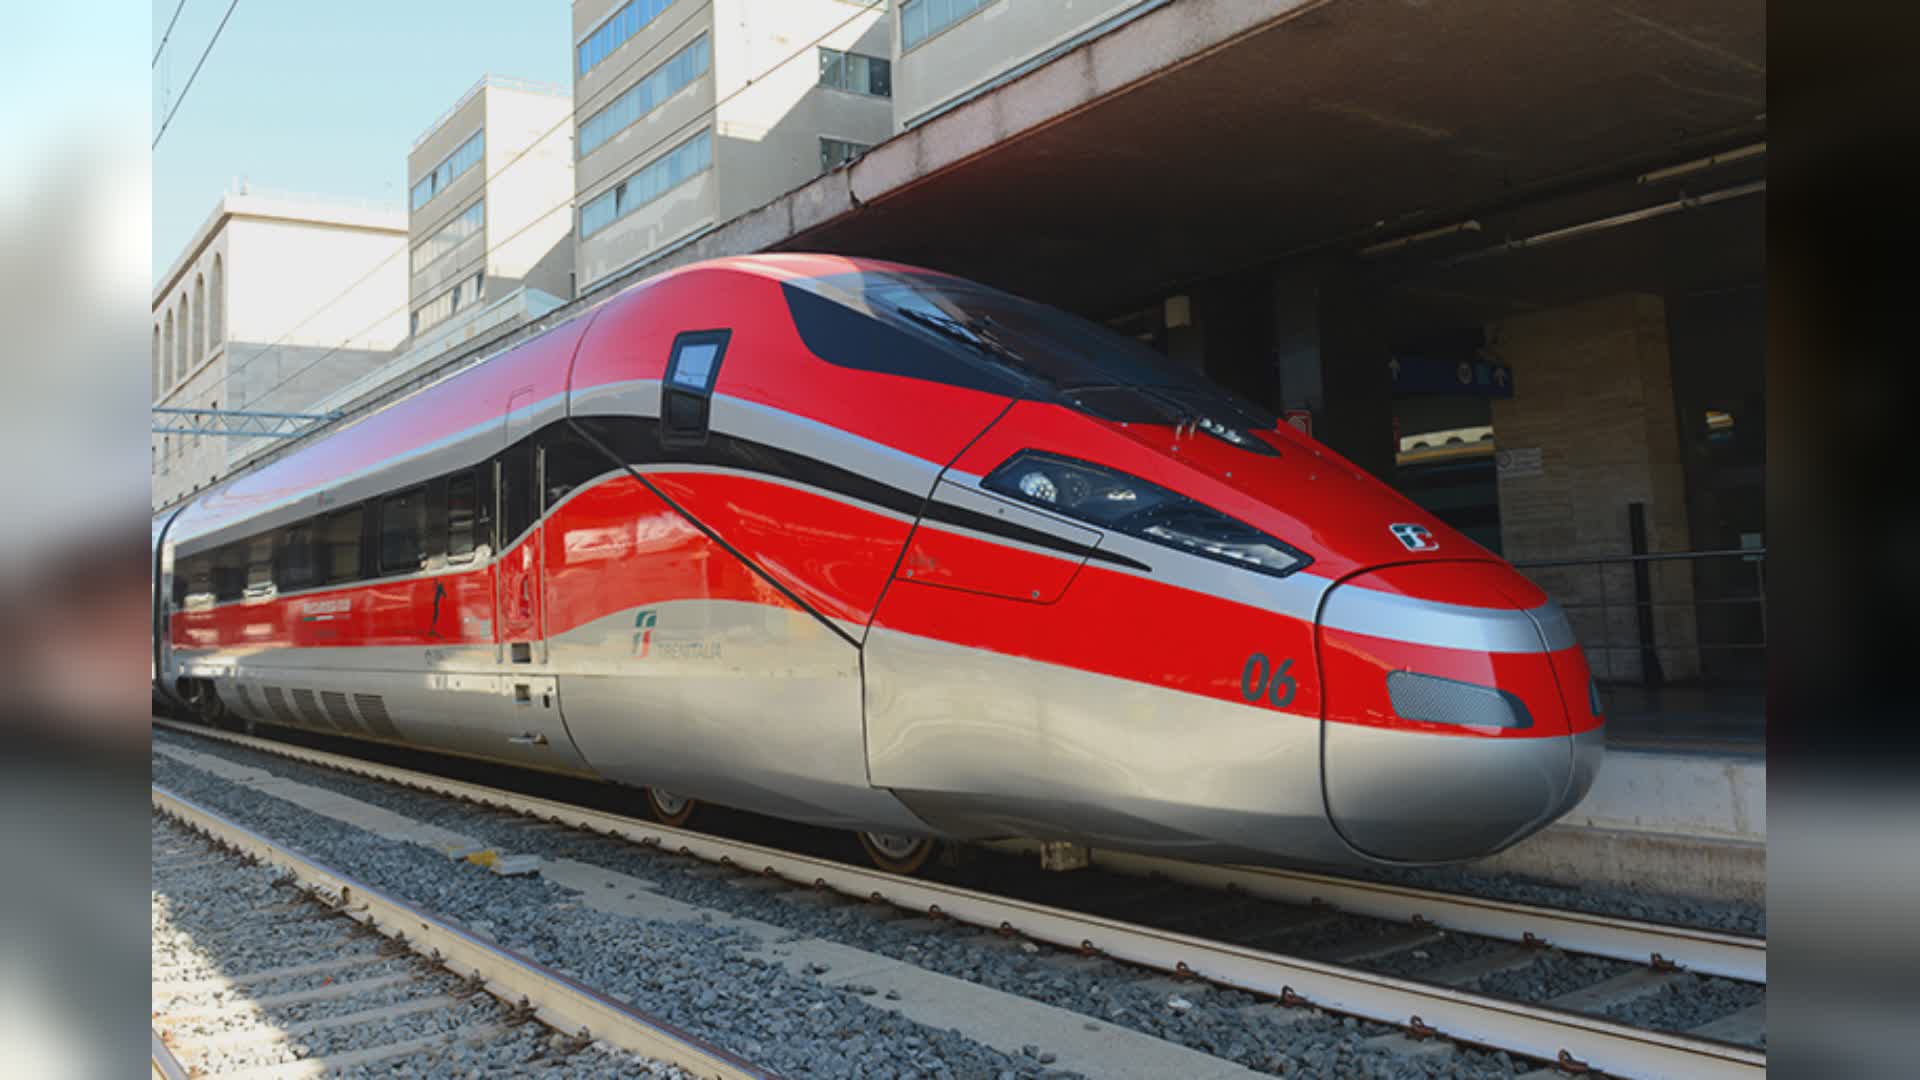 Lombardia: Regione affida la gestione servizi ferroviari fino a 2033 a Trenord